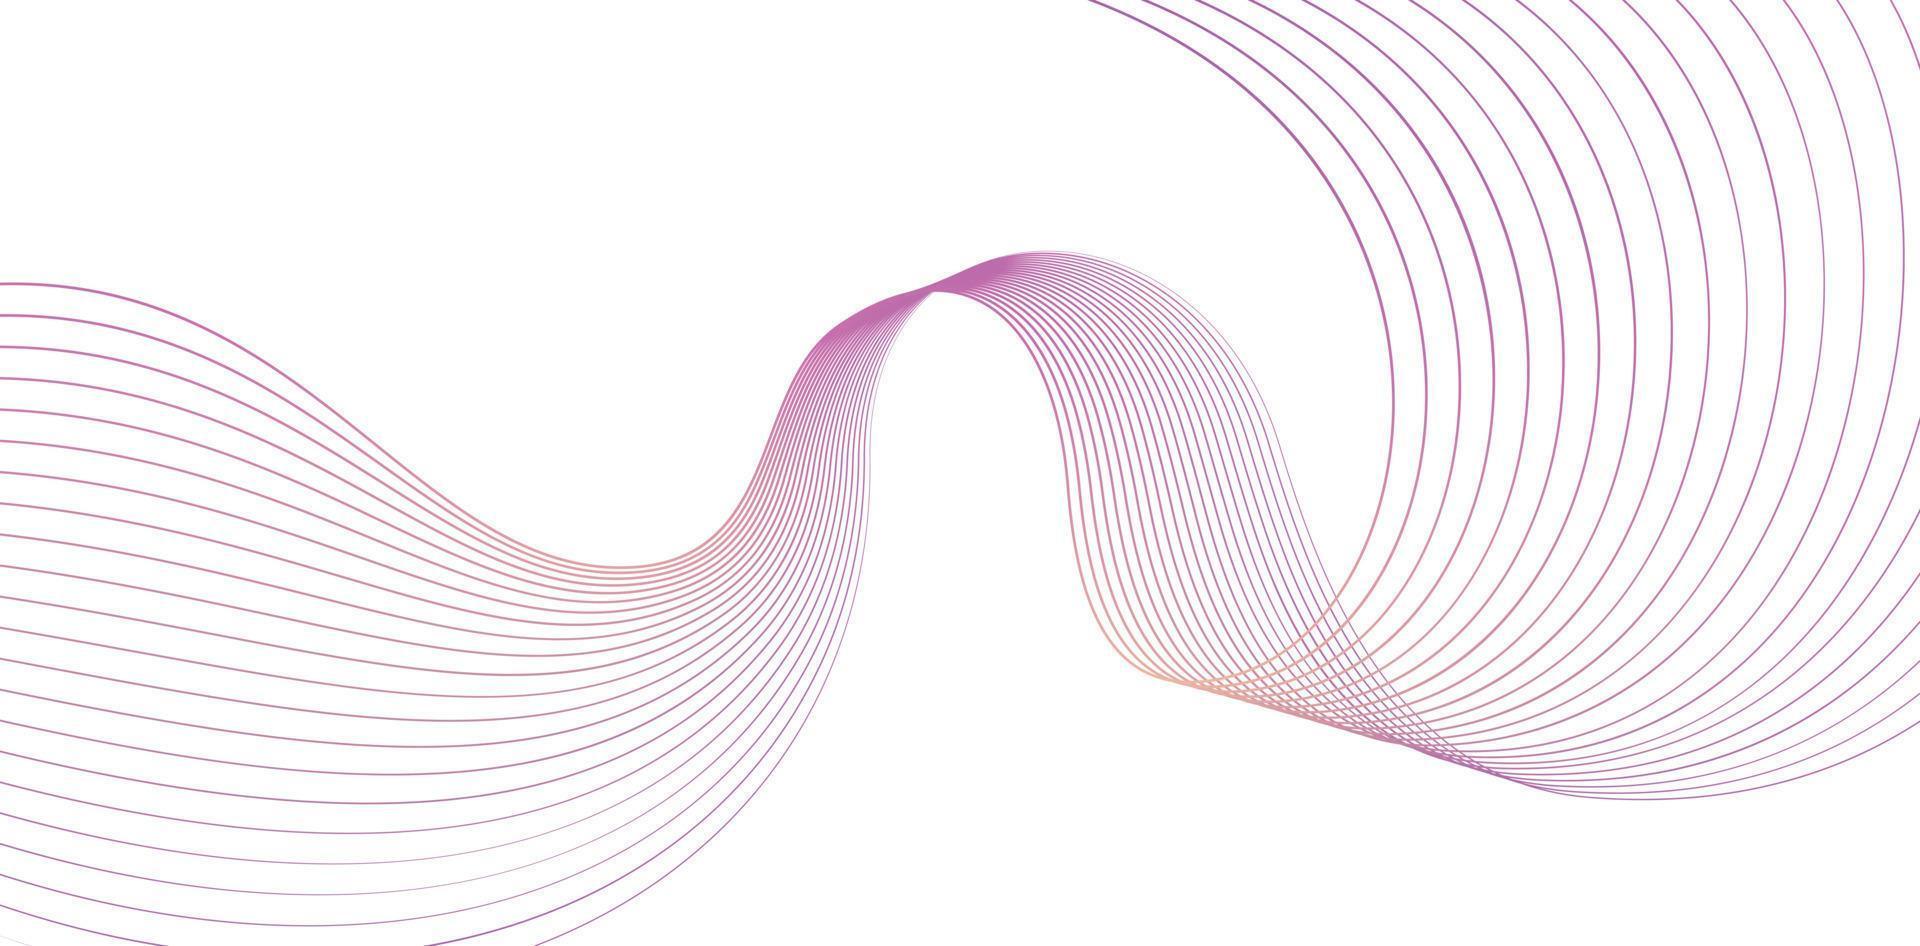 Wellenlinie violettes Farbdesign oder abstrakter Hintergrund mit Linie, anwendbar für Web-Banner, Unternehmensplakate, Tapetencomputer, Präsentationsmedien, geometrische Form des futuristischen Designs, minimalistisches Zeichen vektor